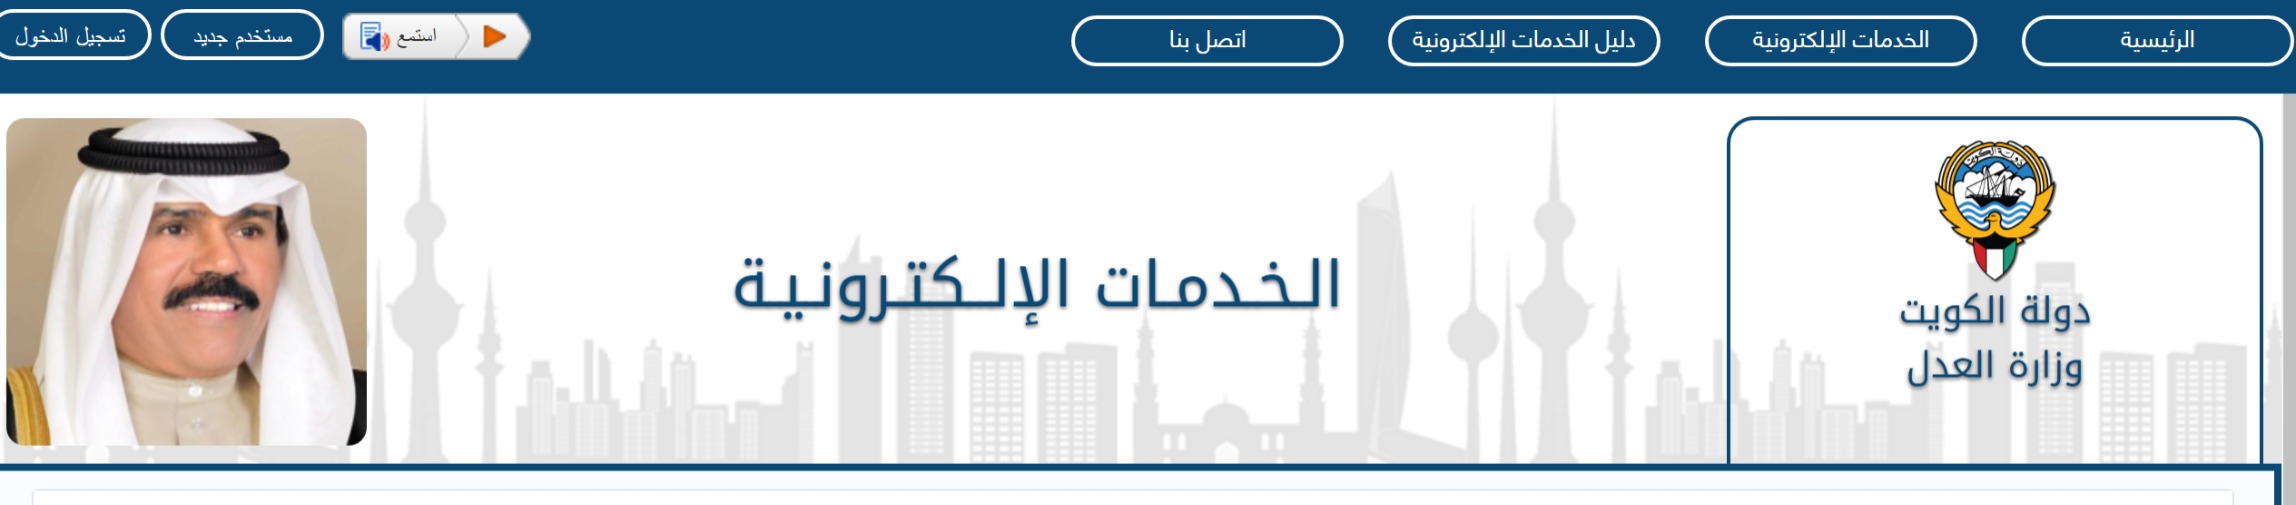 تسجيل الدخول في بوابة وزارة العدل الكويتية